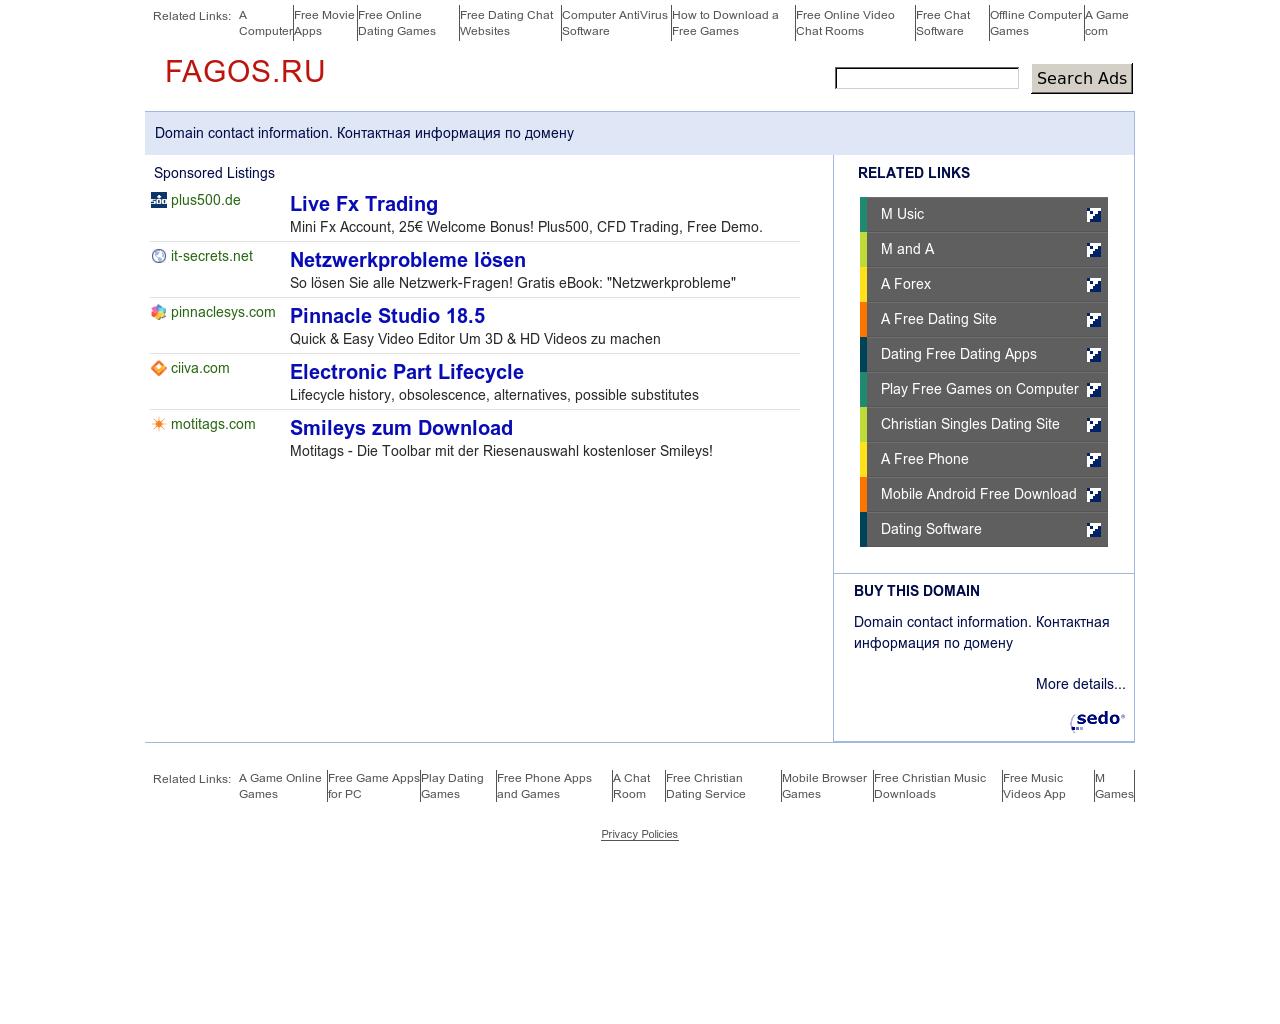 Изображение сайта fagos.ru в разрешении 1280x1024